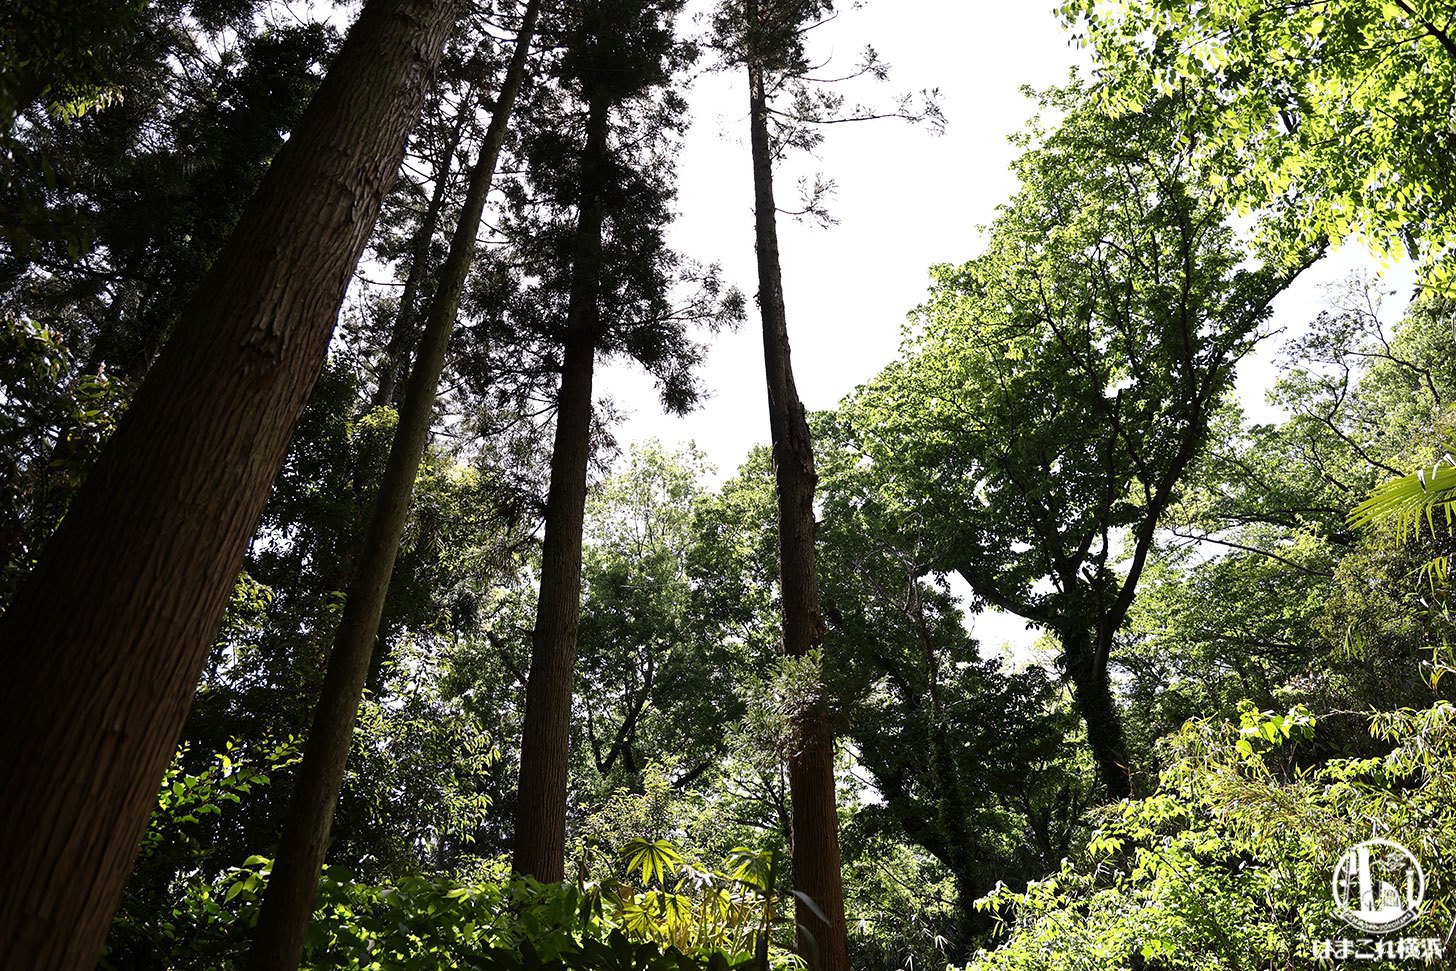 陣ケ下渓谷公園 遊歩道の途中で見た大きな木々